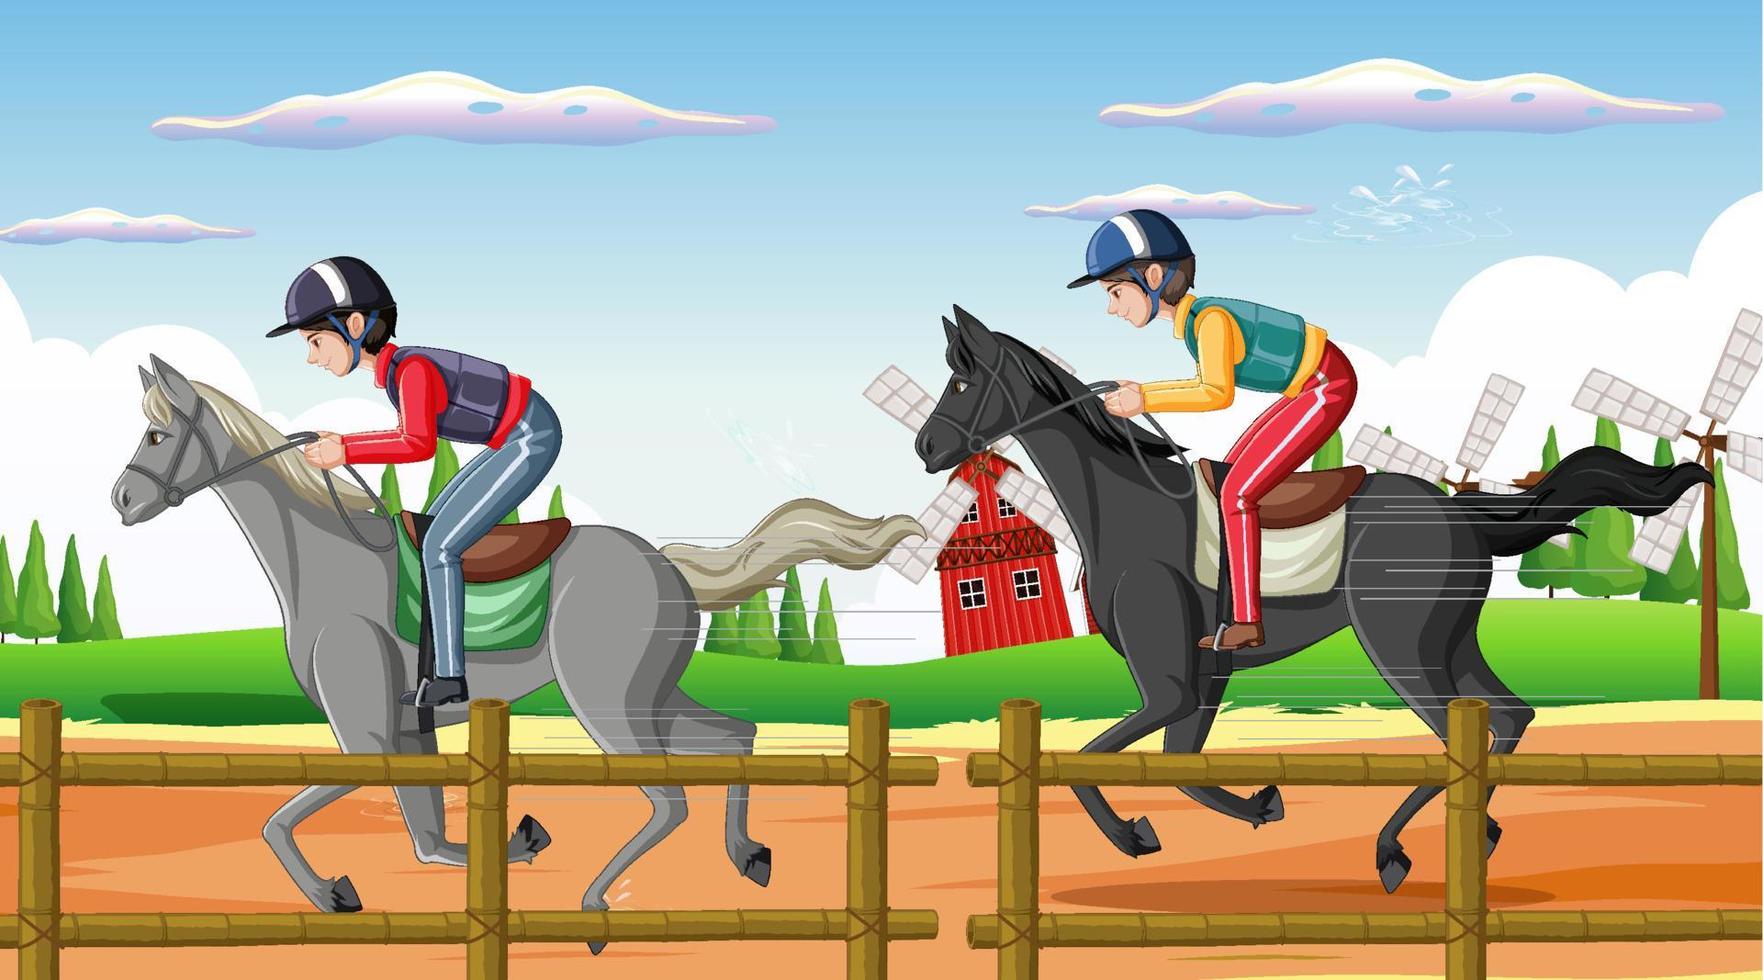 scène d'équitation avec jockey et cheval vecteur